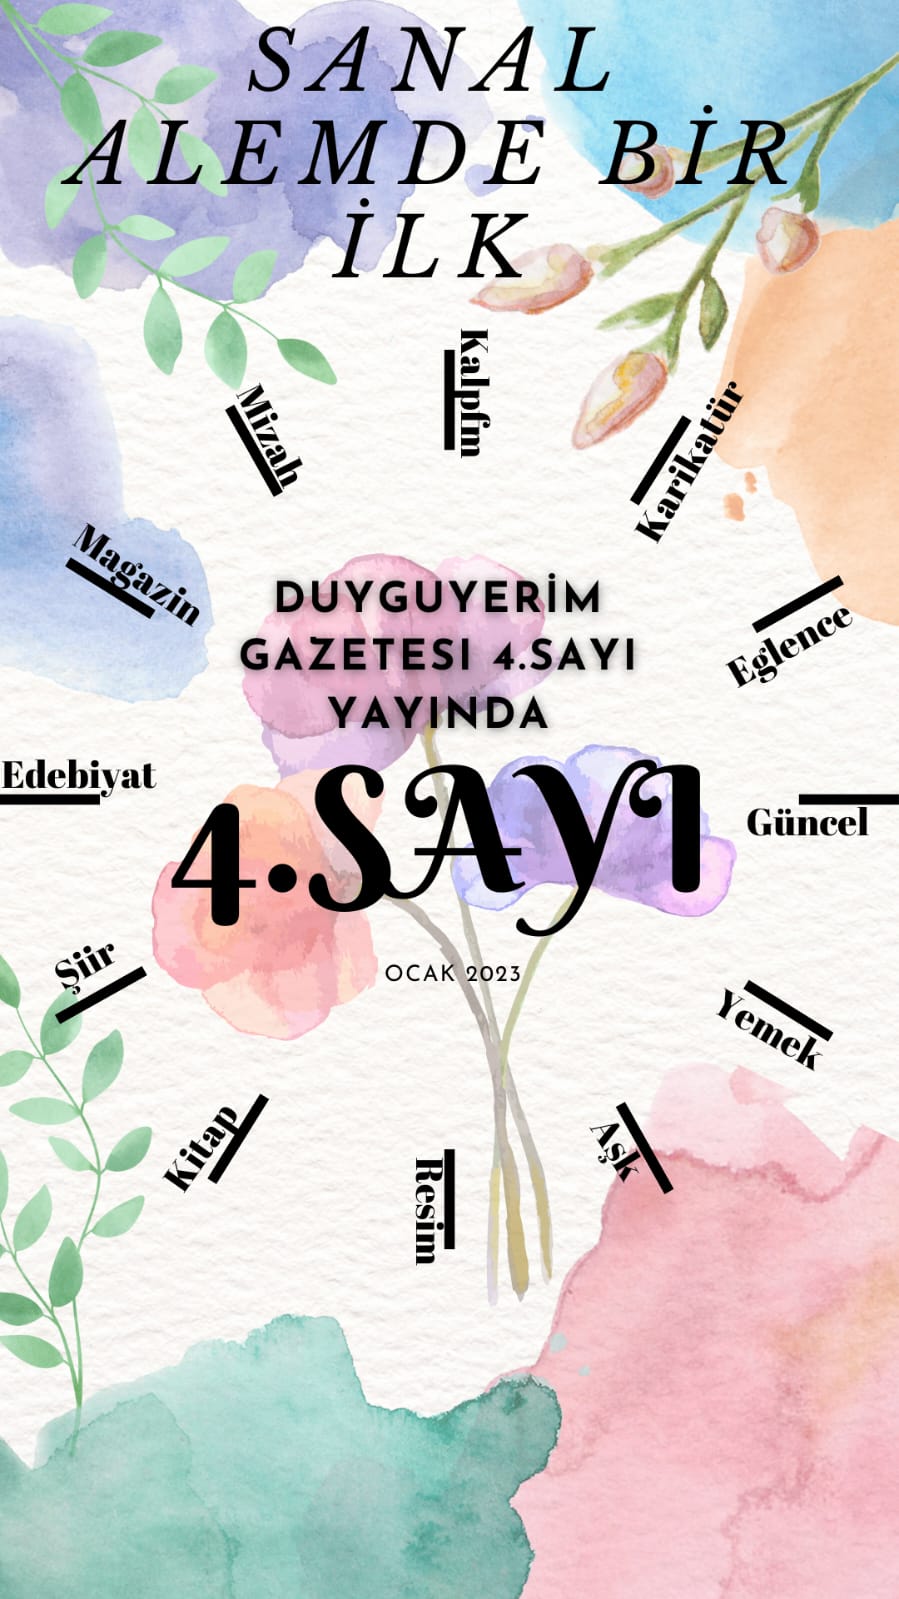 DUYGUYERİM GAZETESİ 4.